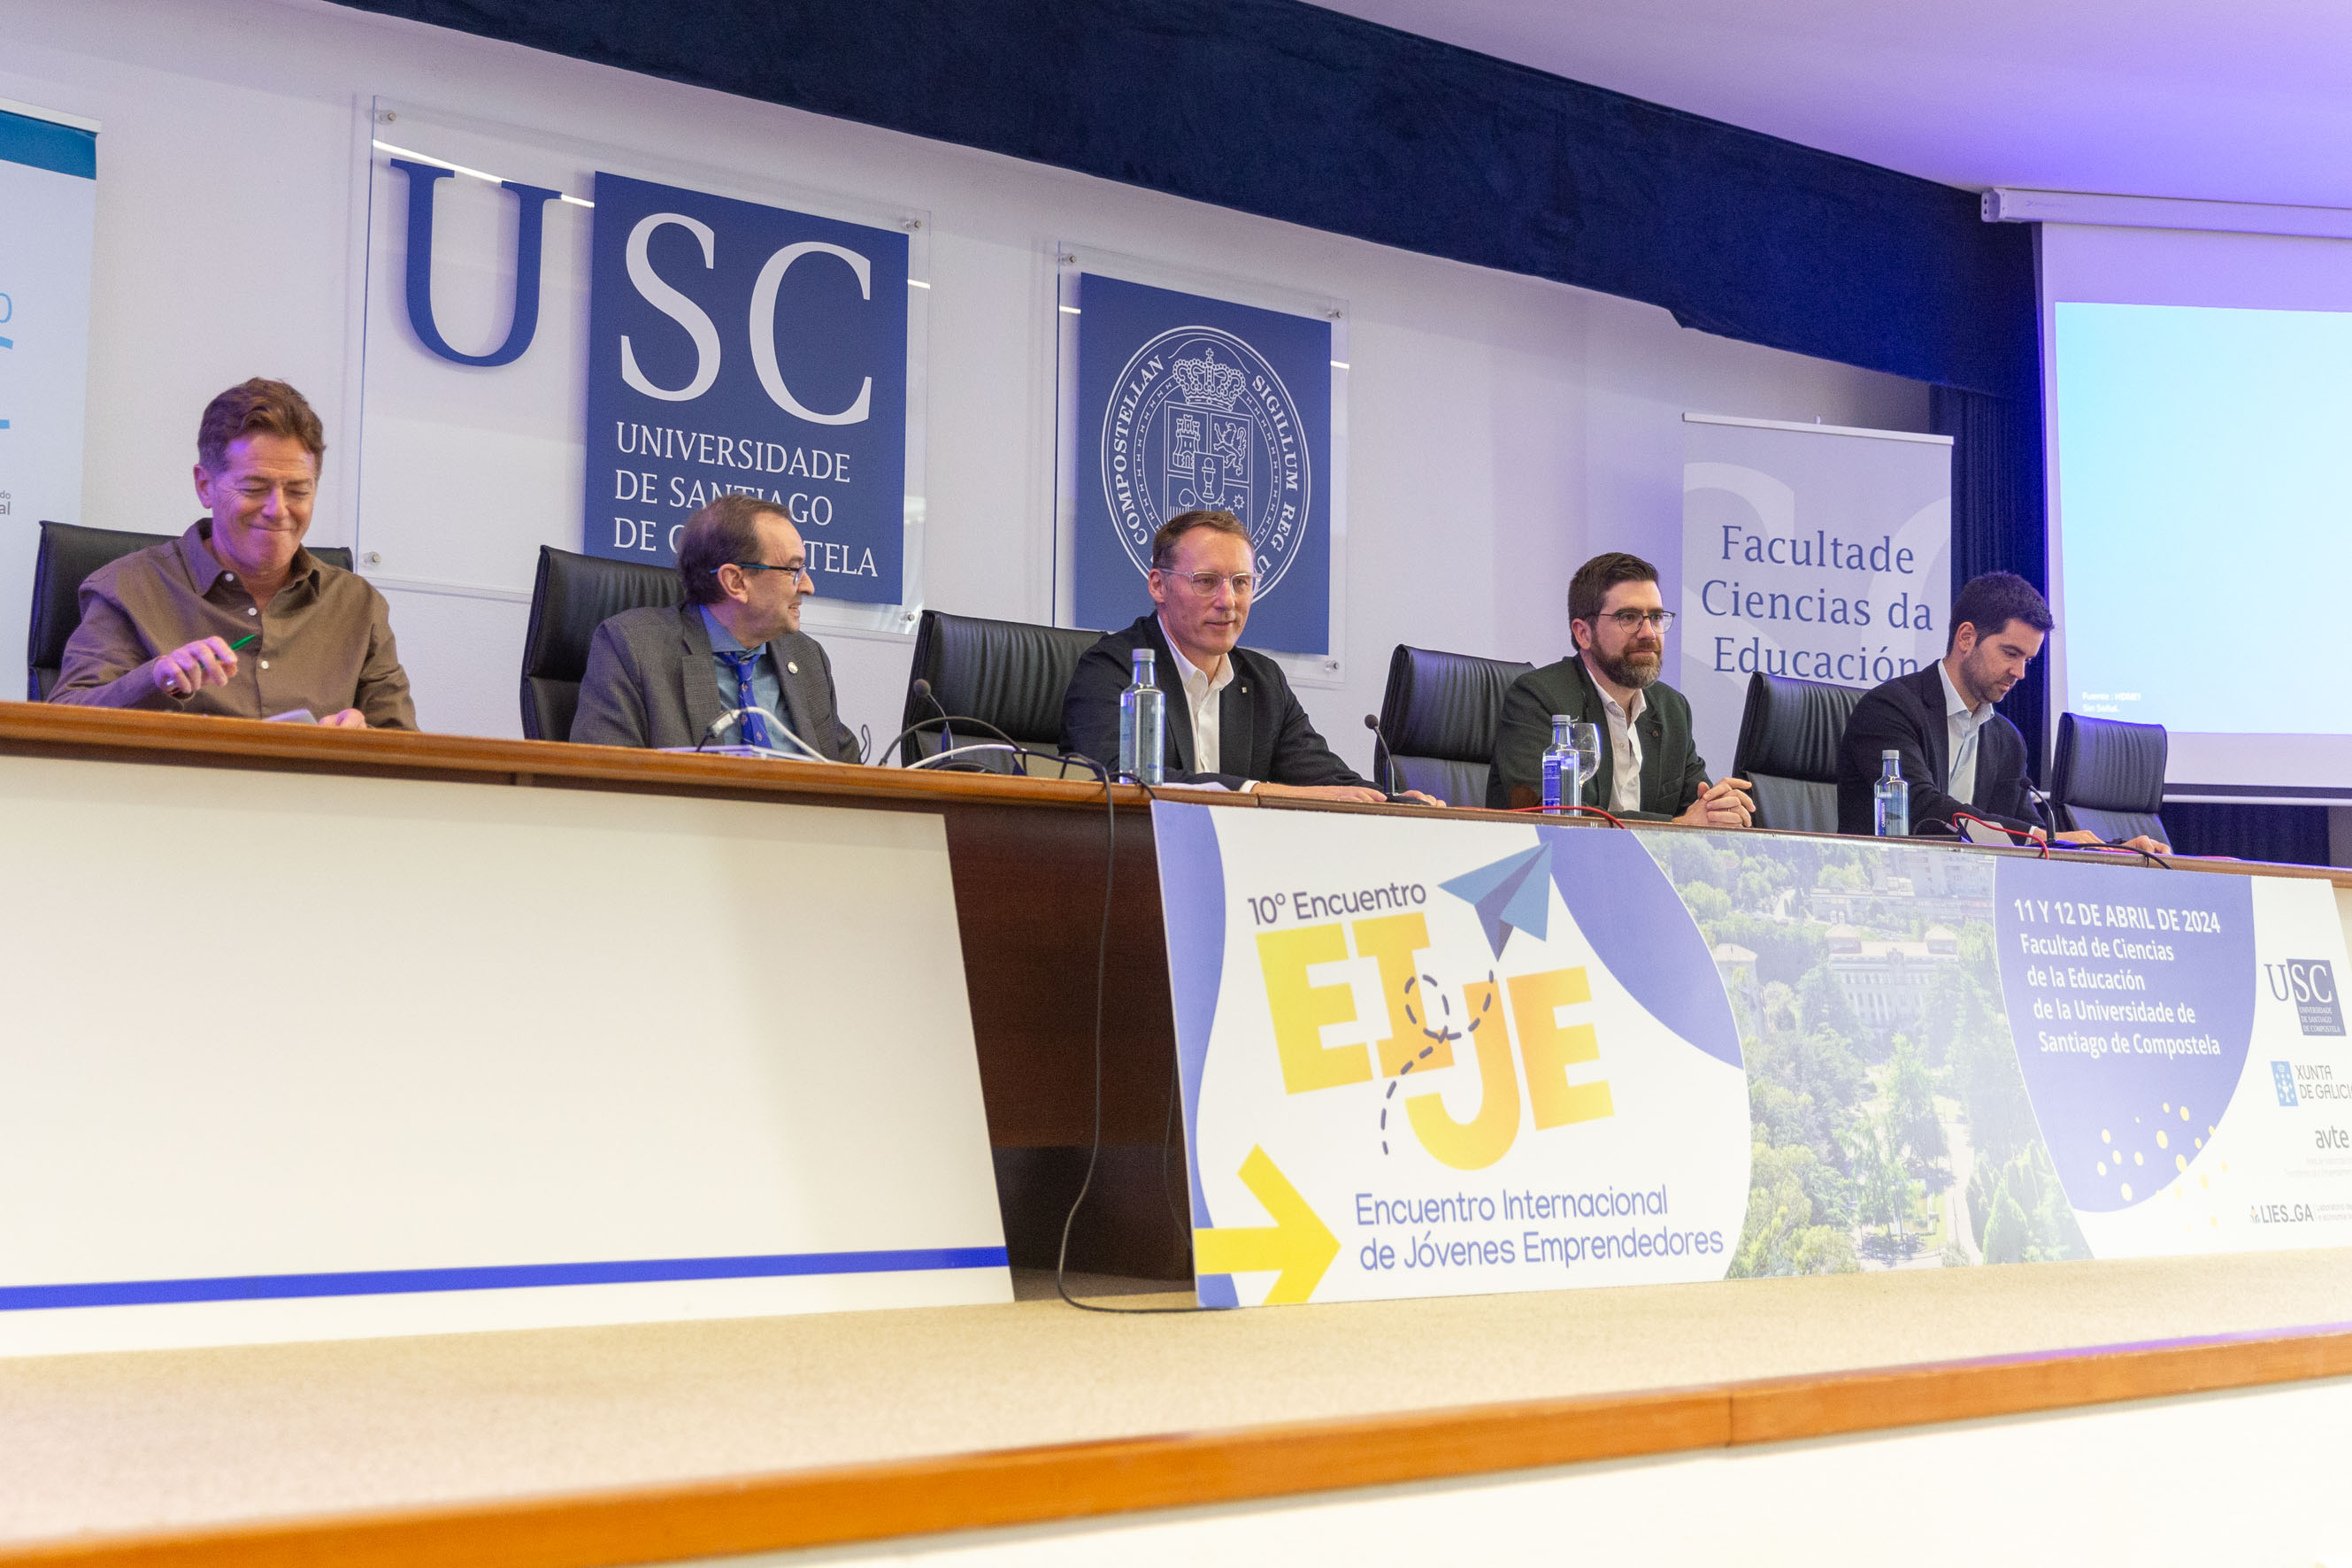 Image 0 of article A Xunta destaca o seu apoio ao emprendemento de base tecnolóxica na clausura dun encontro internacional de xoves emprendedores na USC